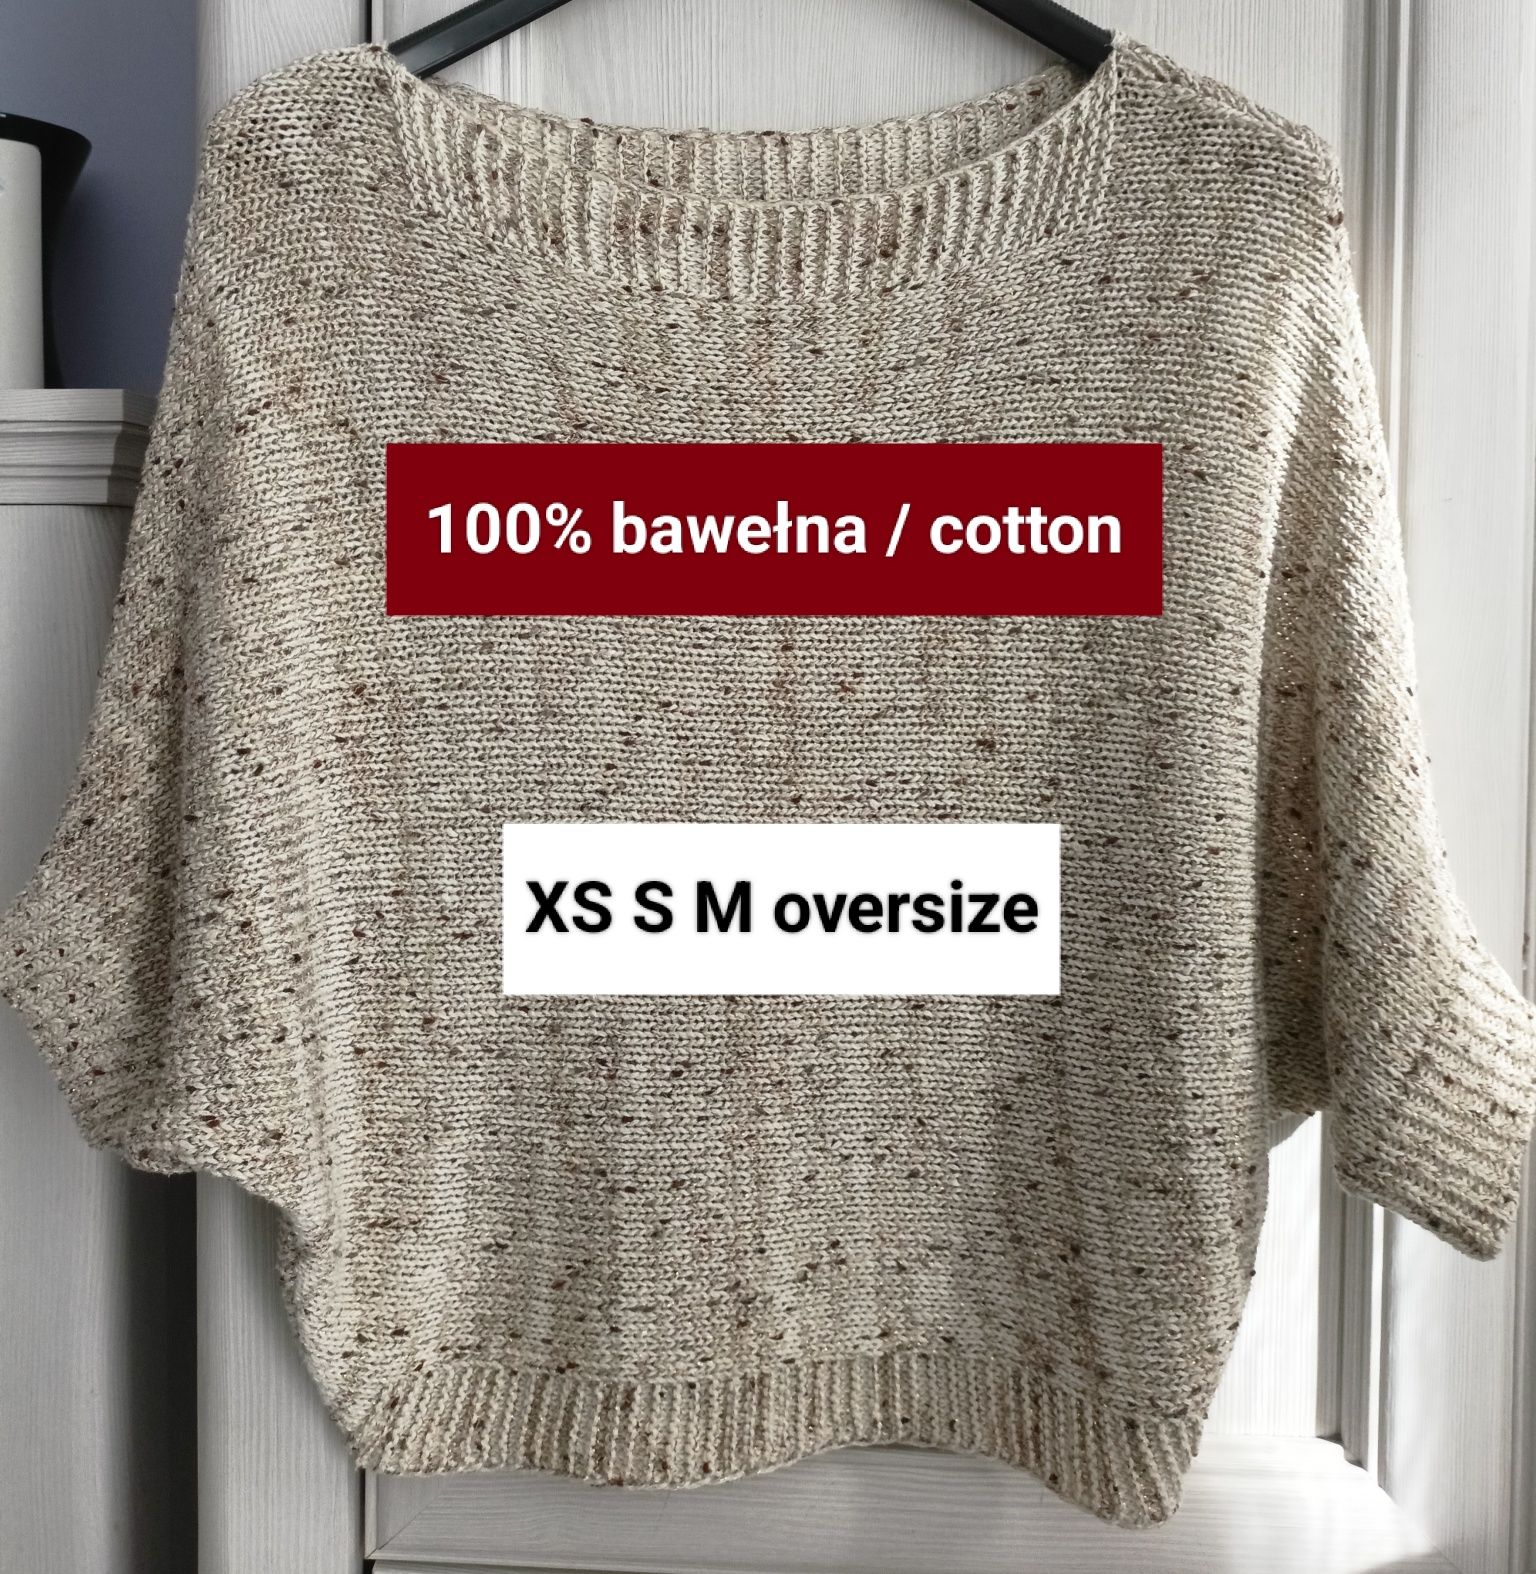 XS S M oversize bawełniany beżowy sweterek kimono 100% bawełna wiosna